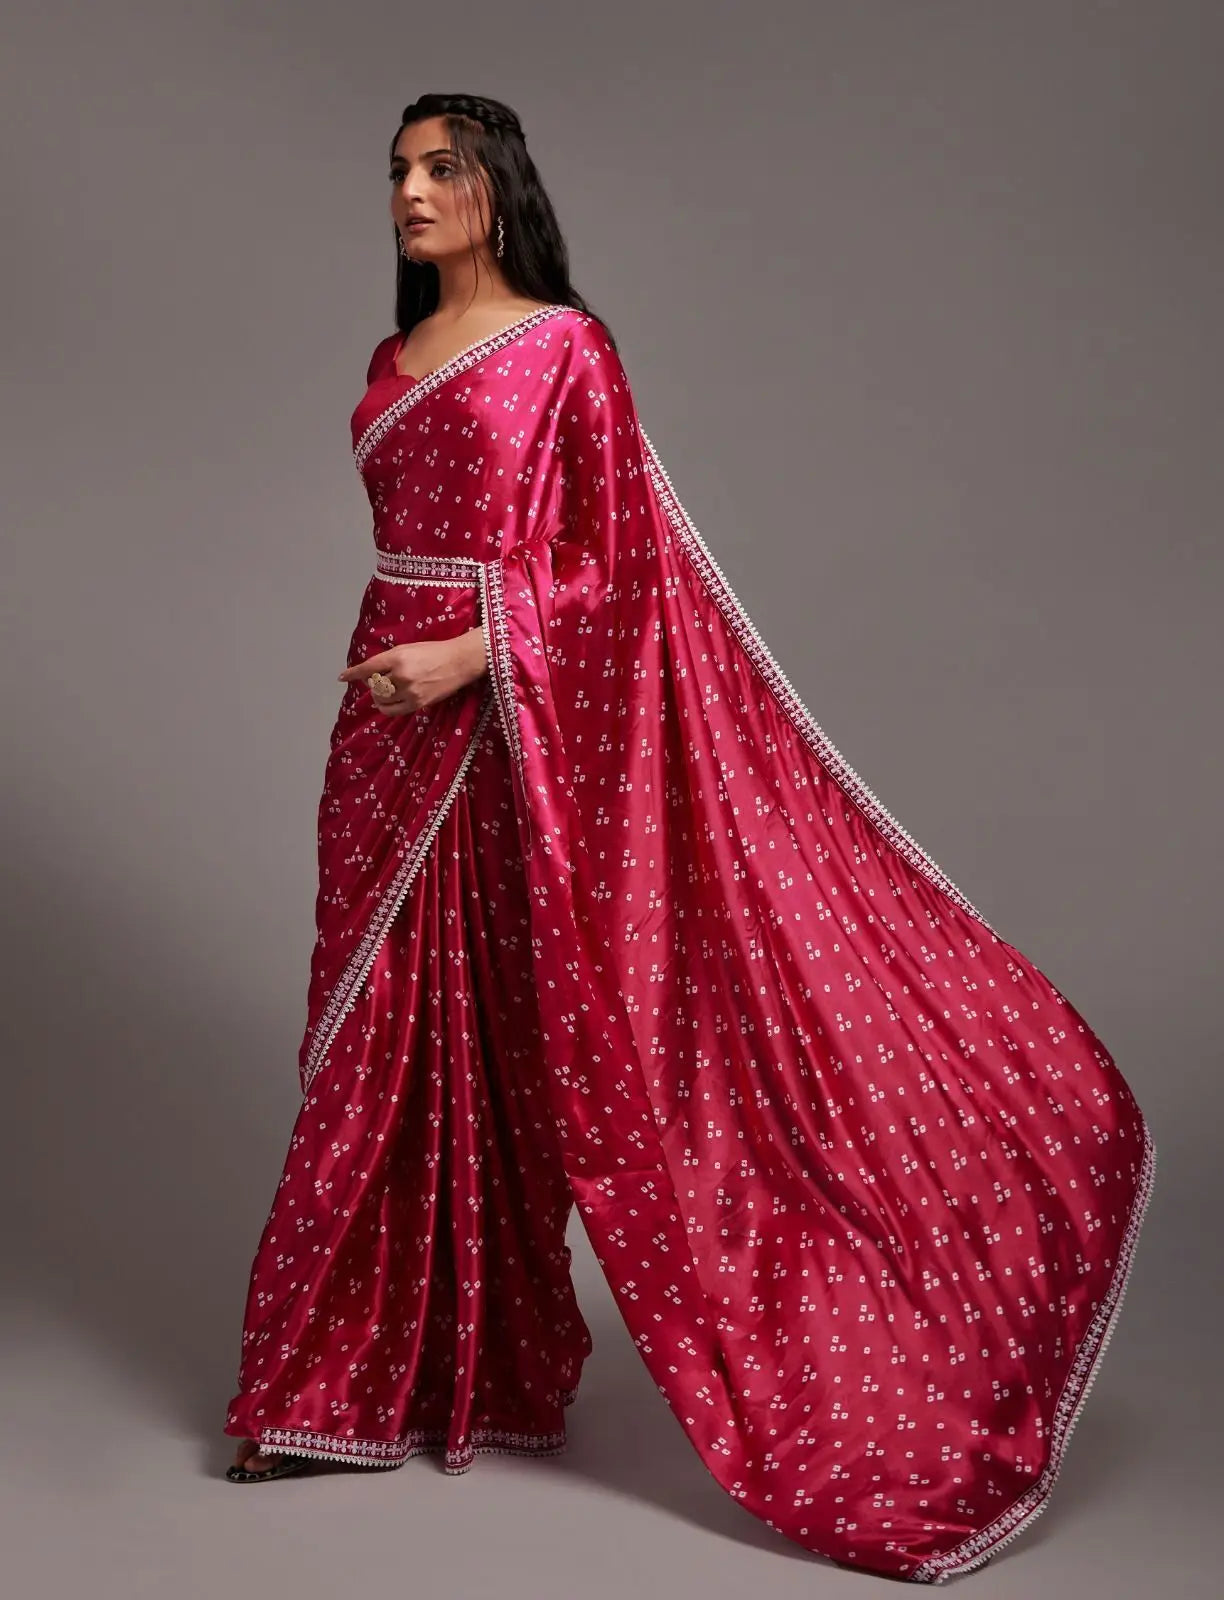 Indian Pakistani Saree Blouse Party Wear Bollywood Traditional Sari